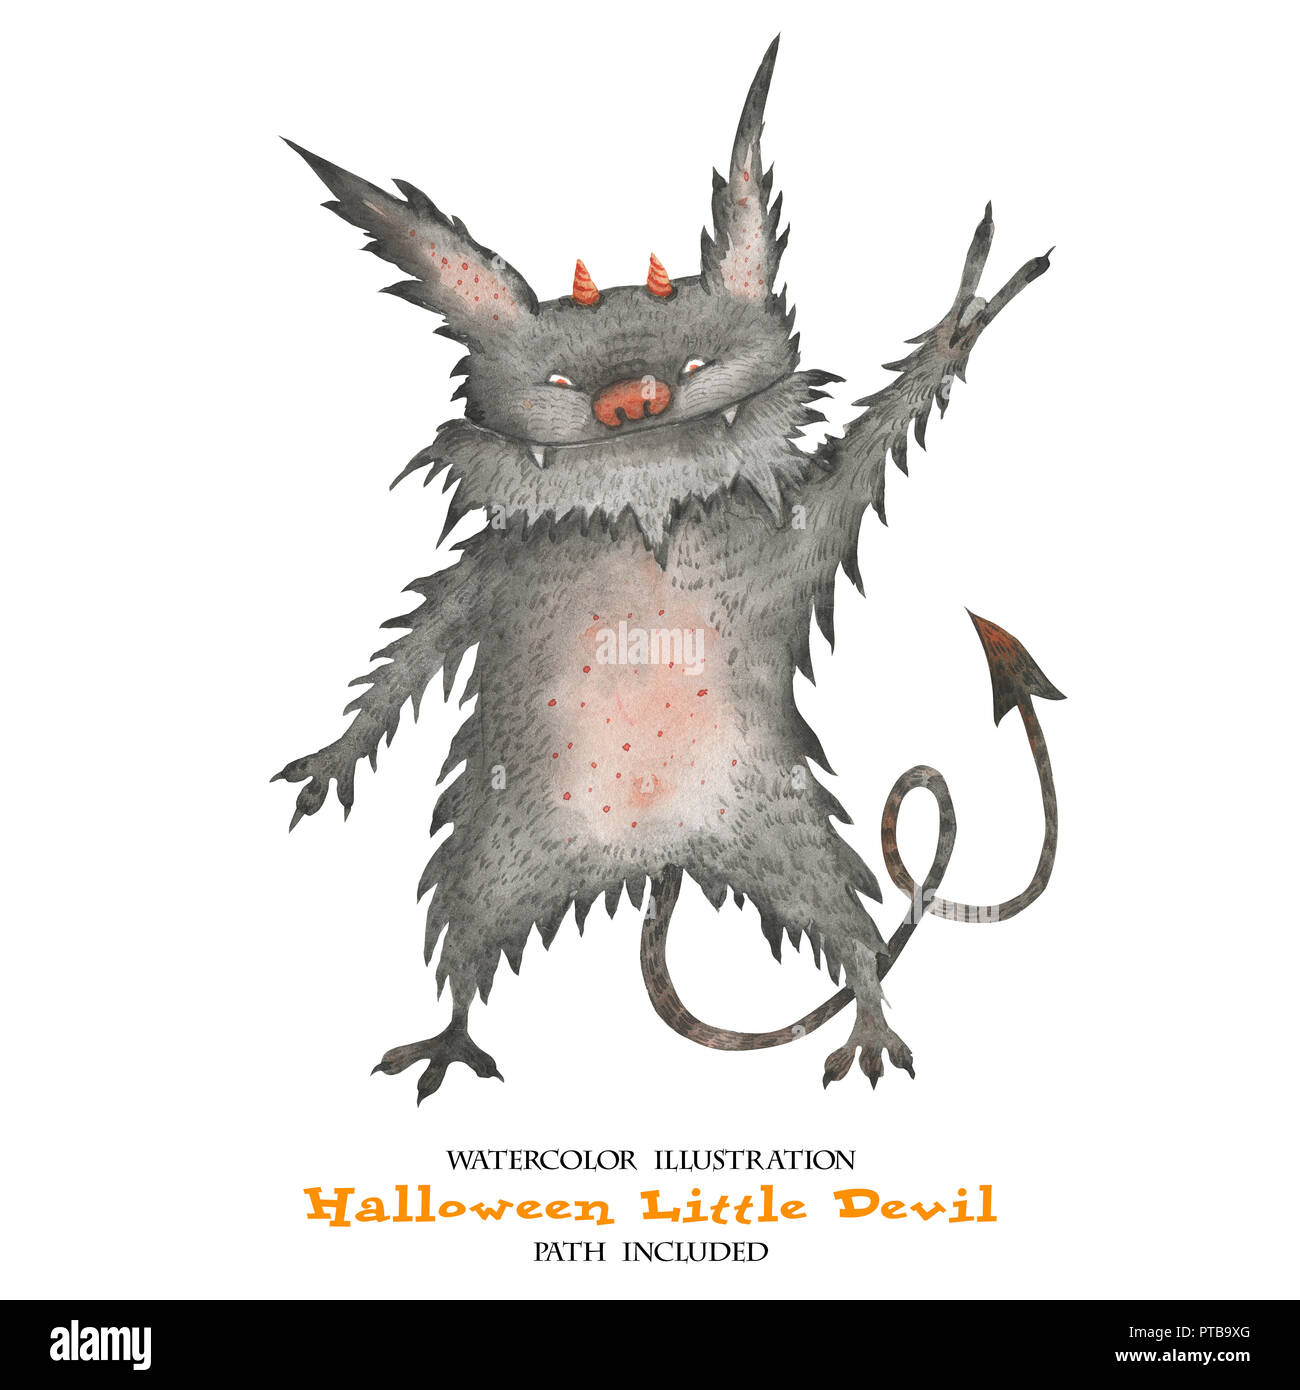 Illustration à l'aquarelle pour l'Halloween. Petit diable. Isoalted, chemin inclus Banque D'Images